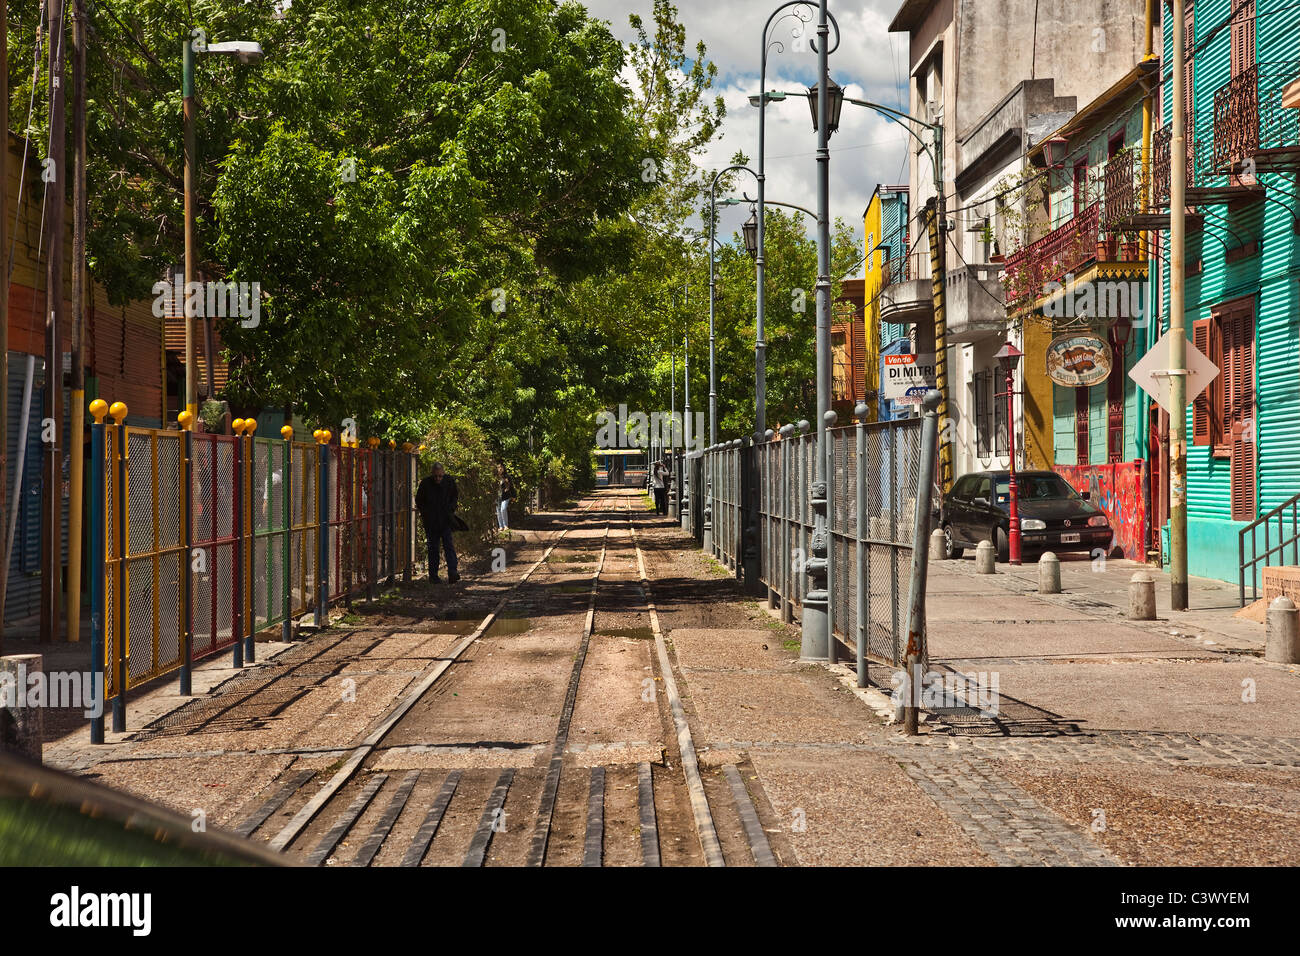 29 fotos de stock e banco de imagens de Buenos Aires Tram - Getty Images